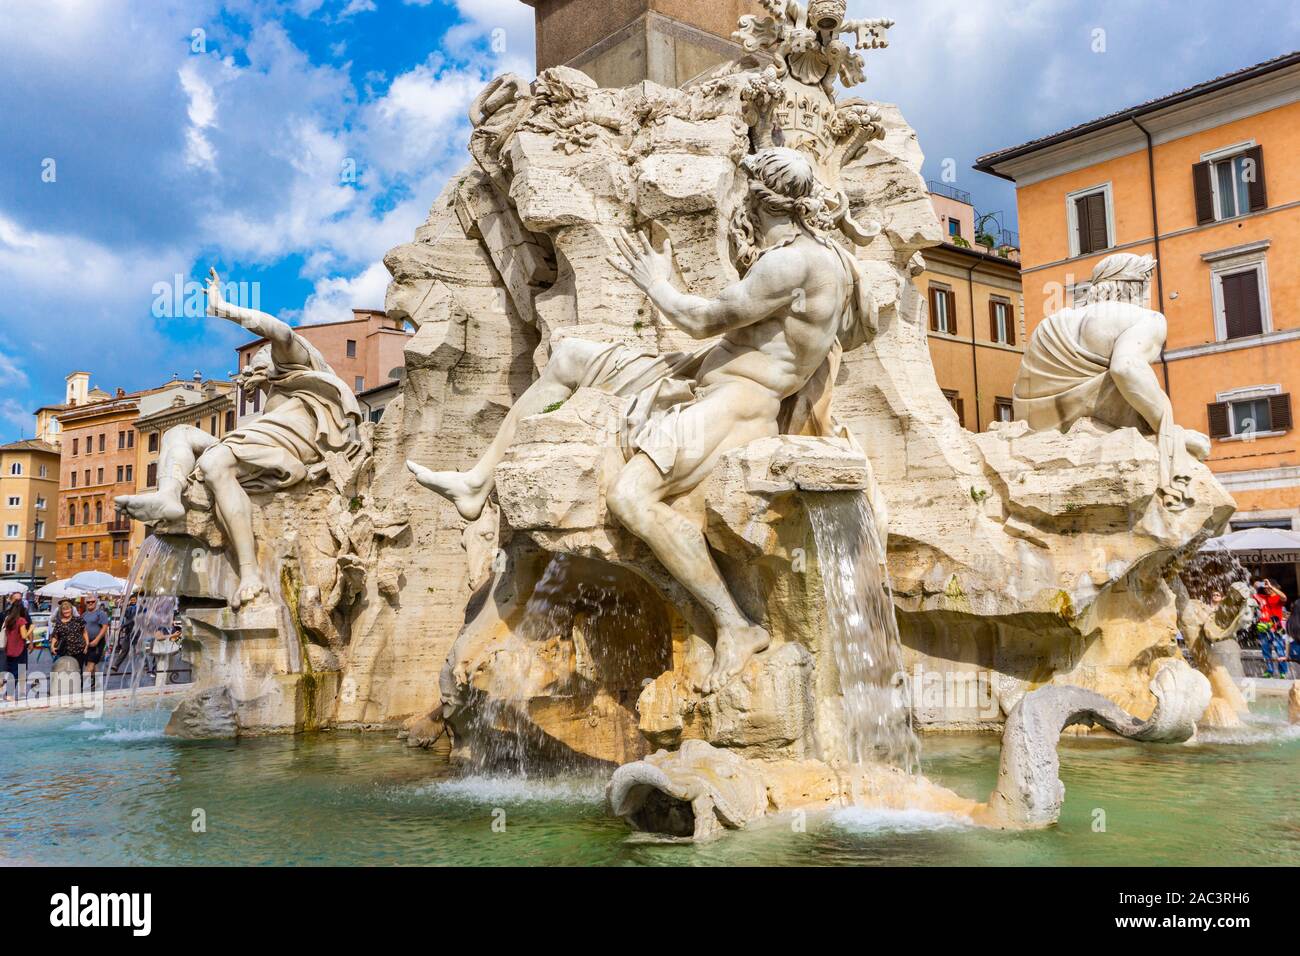 Fontana dei Quattro Fiumi, Piazza Navona à Rome, Italie. Il a été conçu en 1651 par le Bernin pour le Pape Innocent X. Banque D'Images